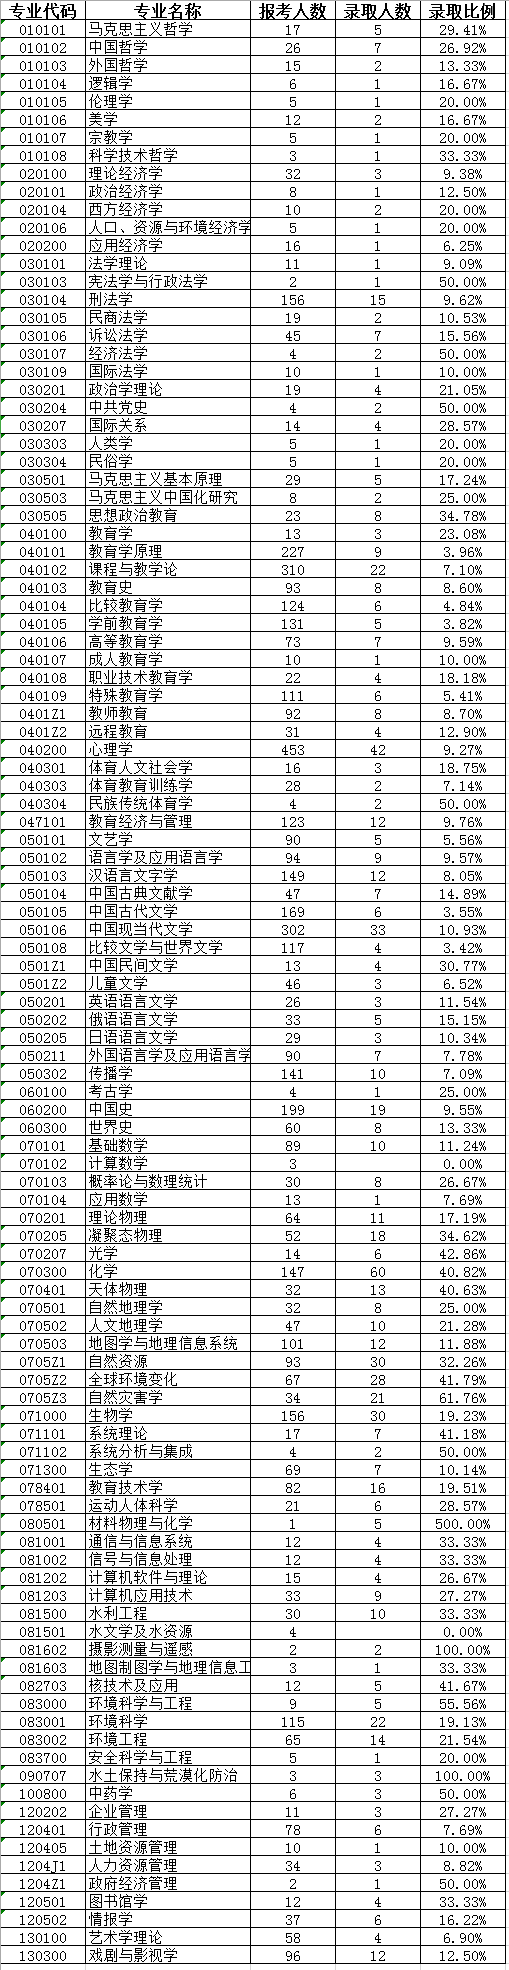 北京师范大学2017年研究生报考录取比例